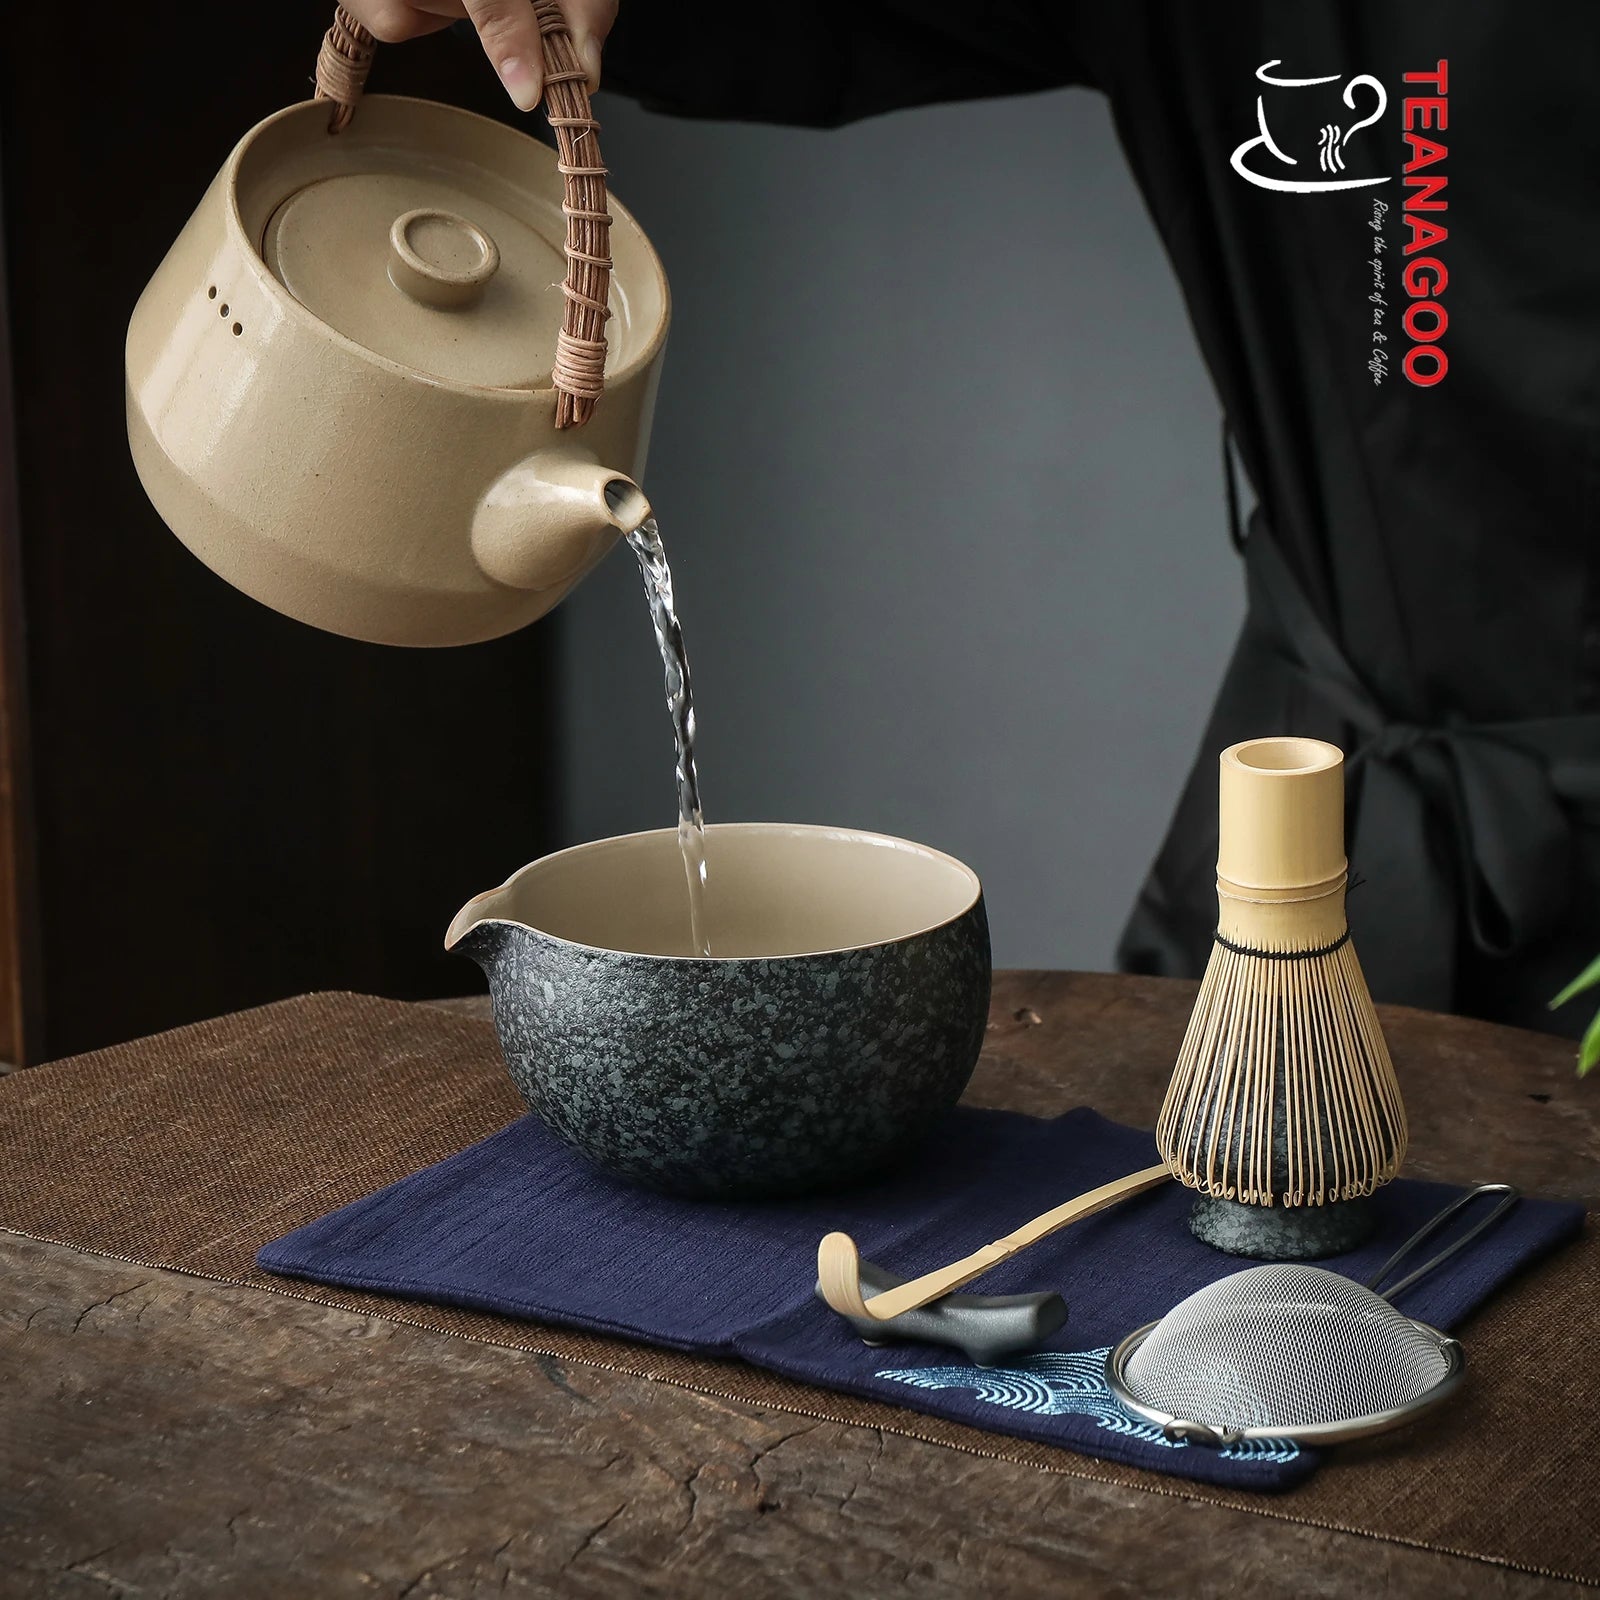 Japanese Matcha Tea Set Matcha Bowl Bamboo Whisk Holder Tray Matcha Set